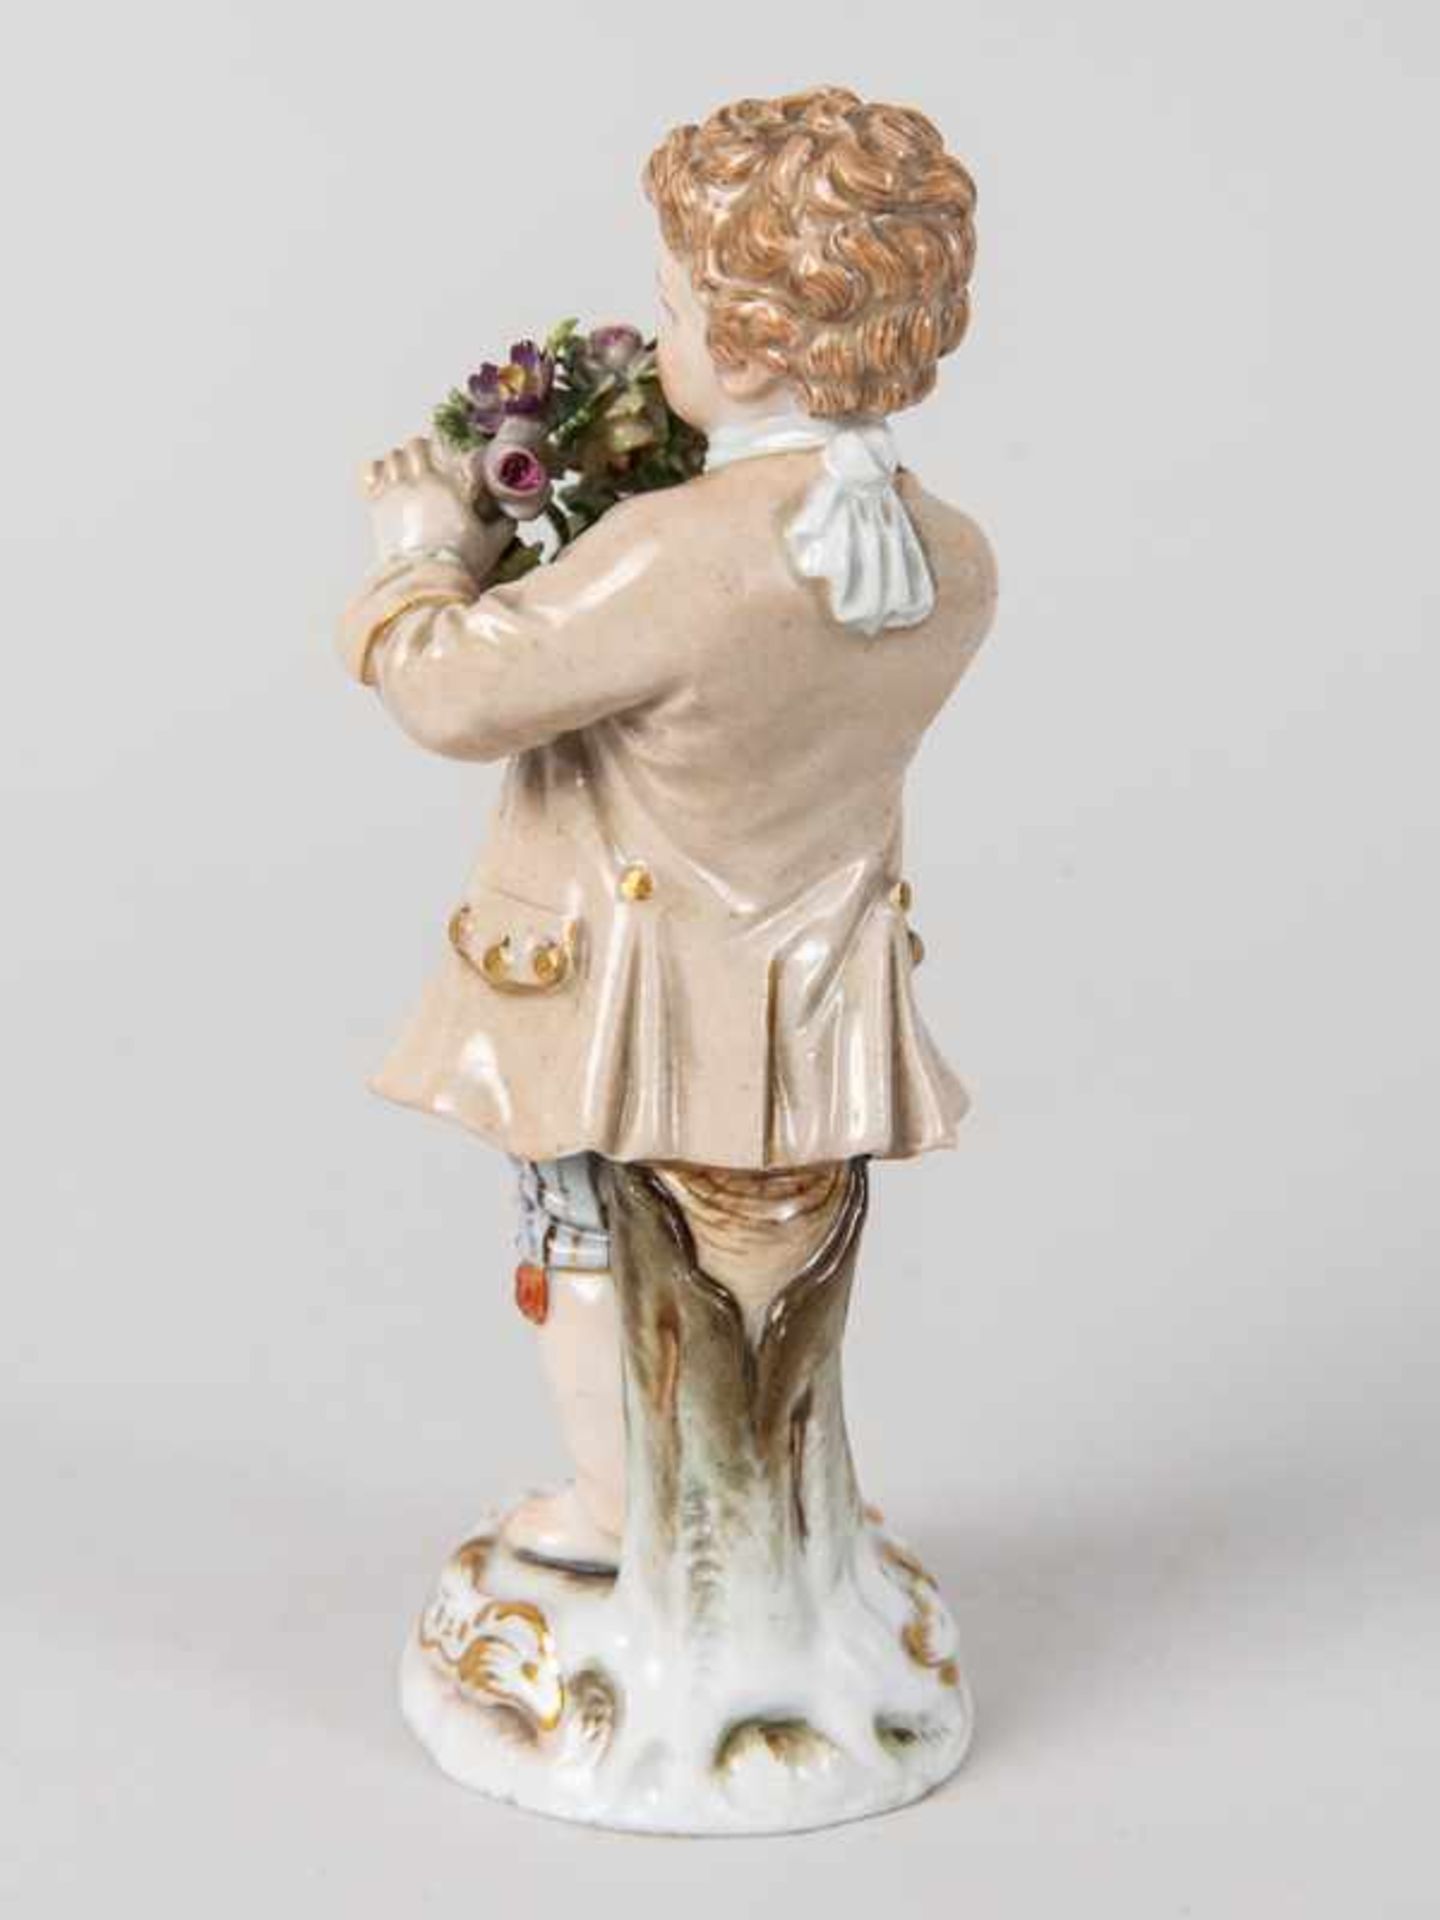 Porzellanfigur "Gärtnerjunge", Meissen, um 1900. - Bild 3 aus 7